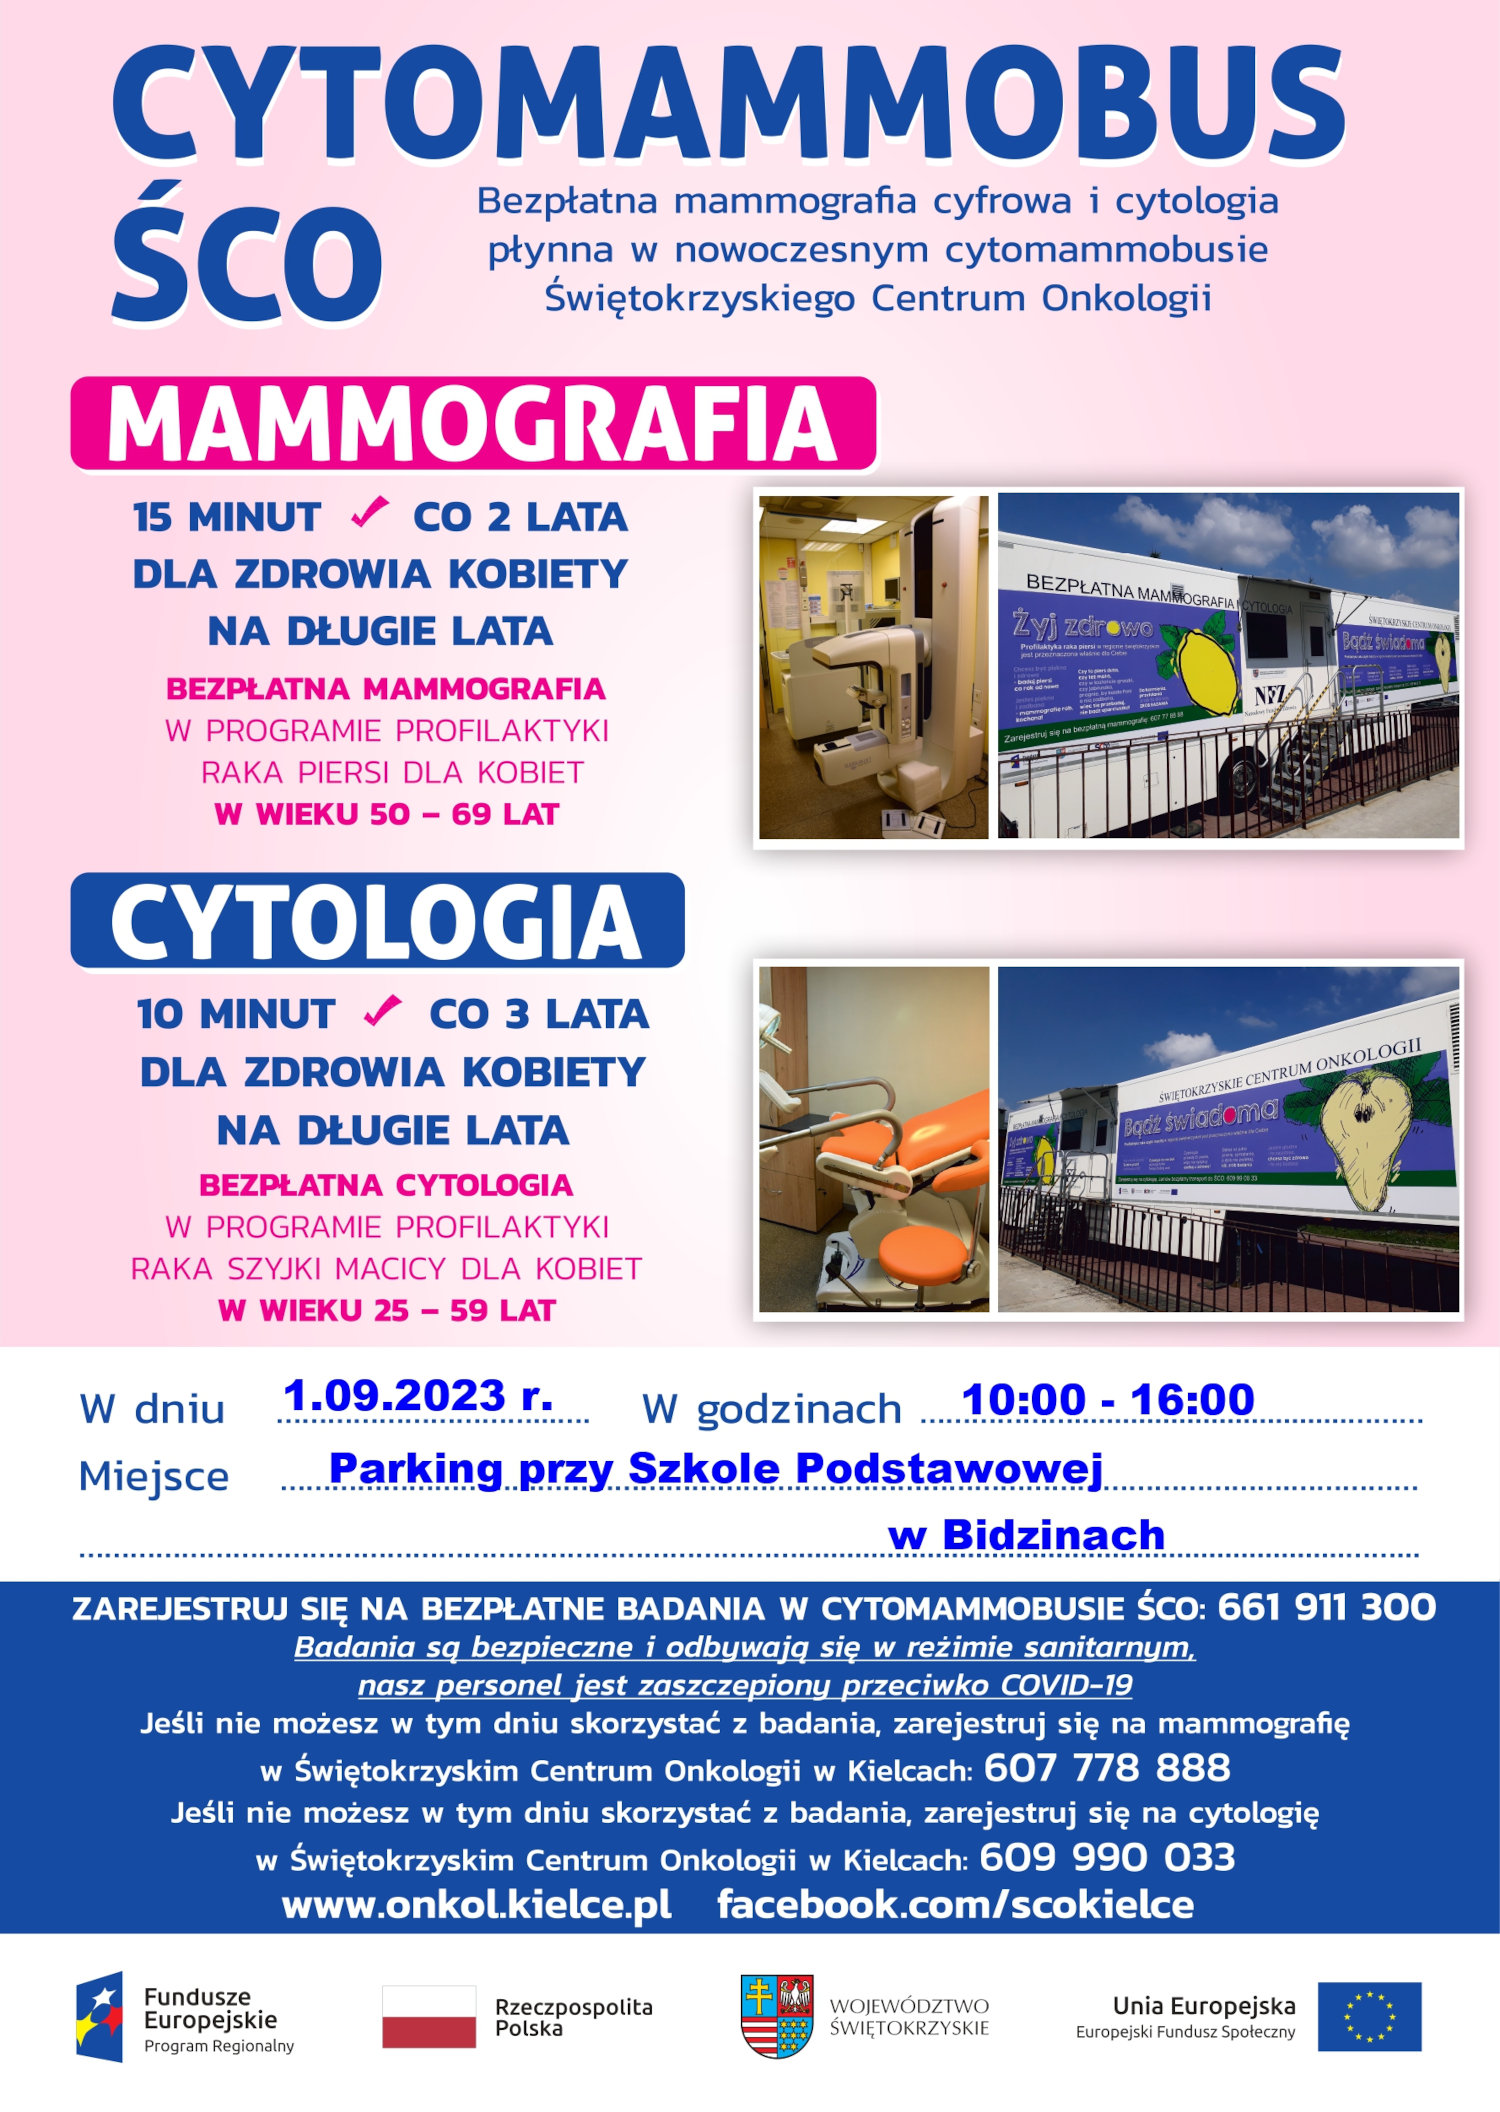 Plakat z informacjami o cytomammobusie ŚCO